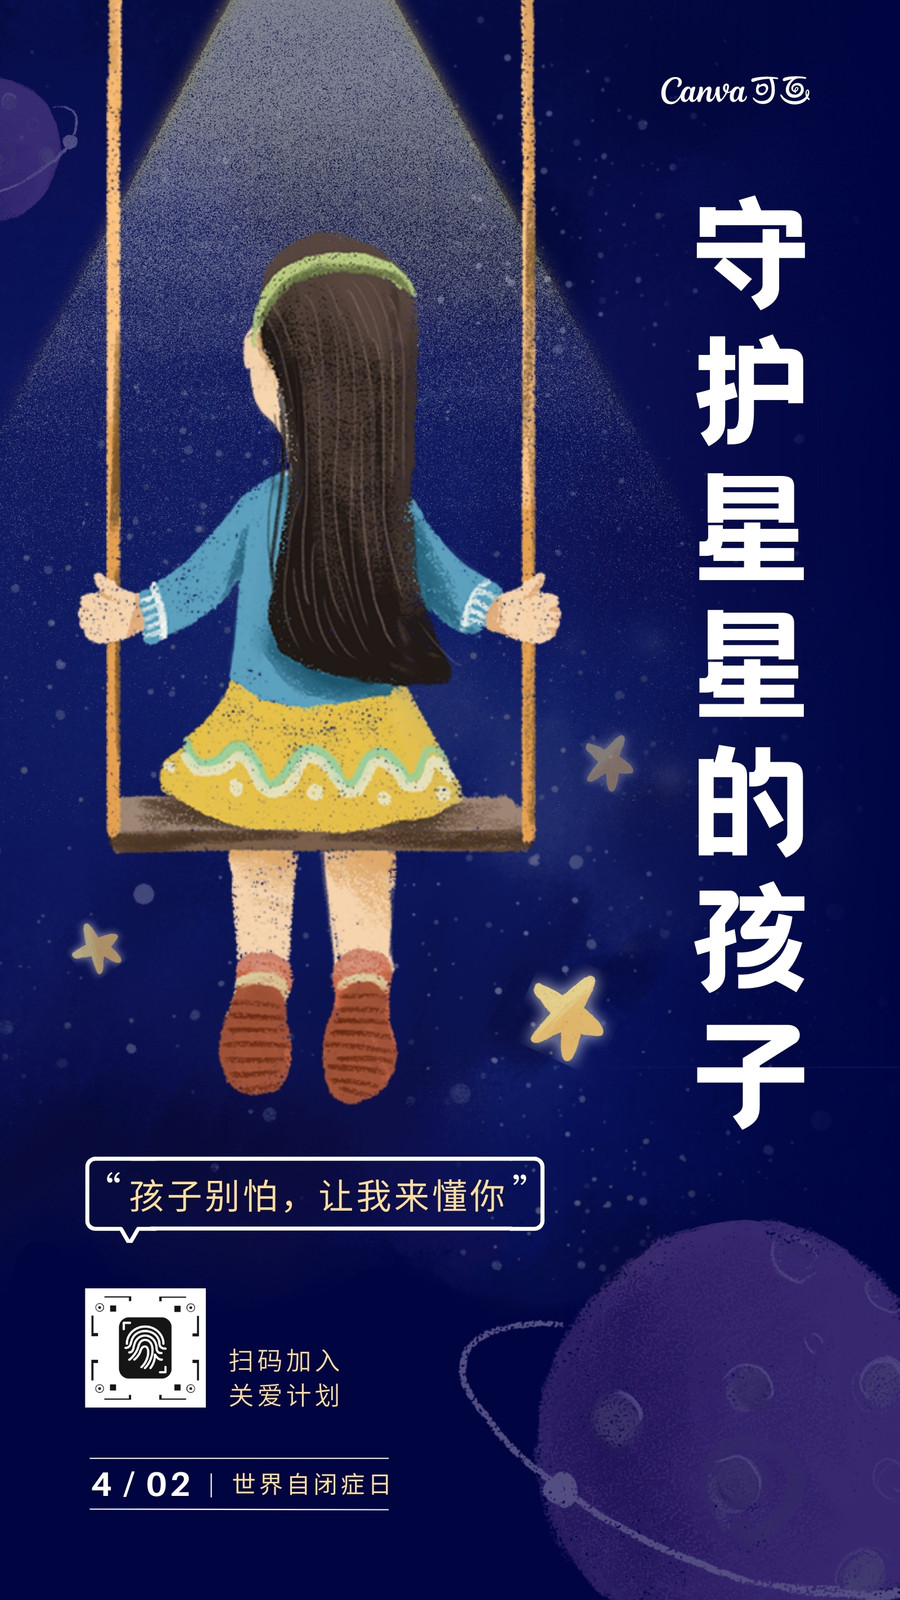 蓝黄色关爱自闭儿童插画手绘公益宣传中文手机海报